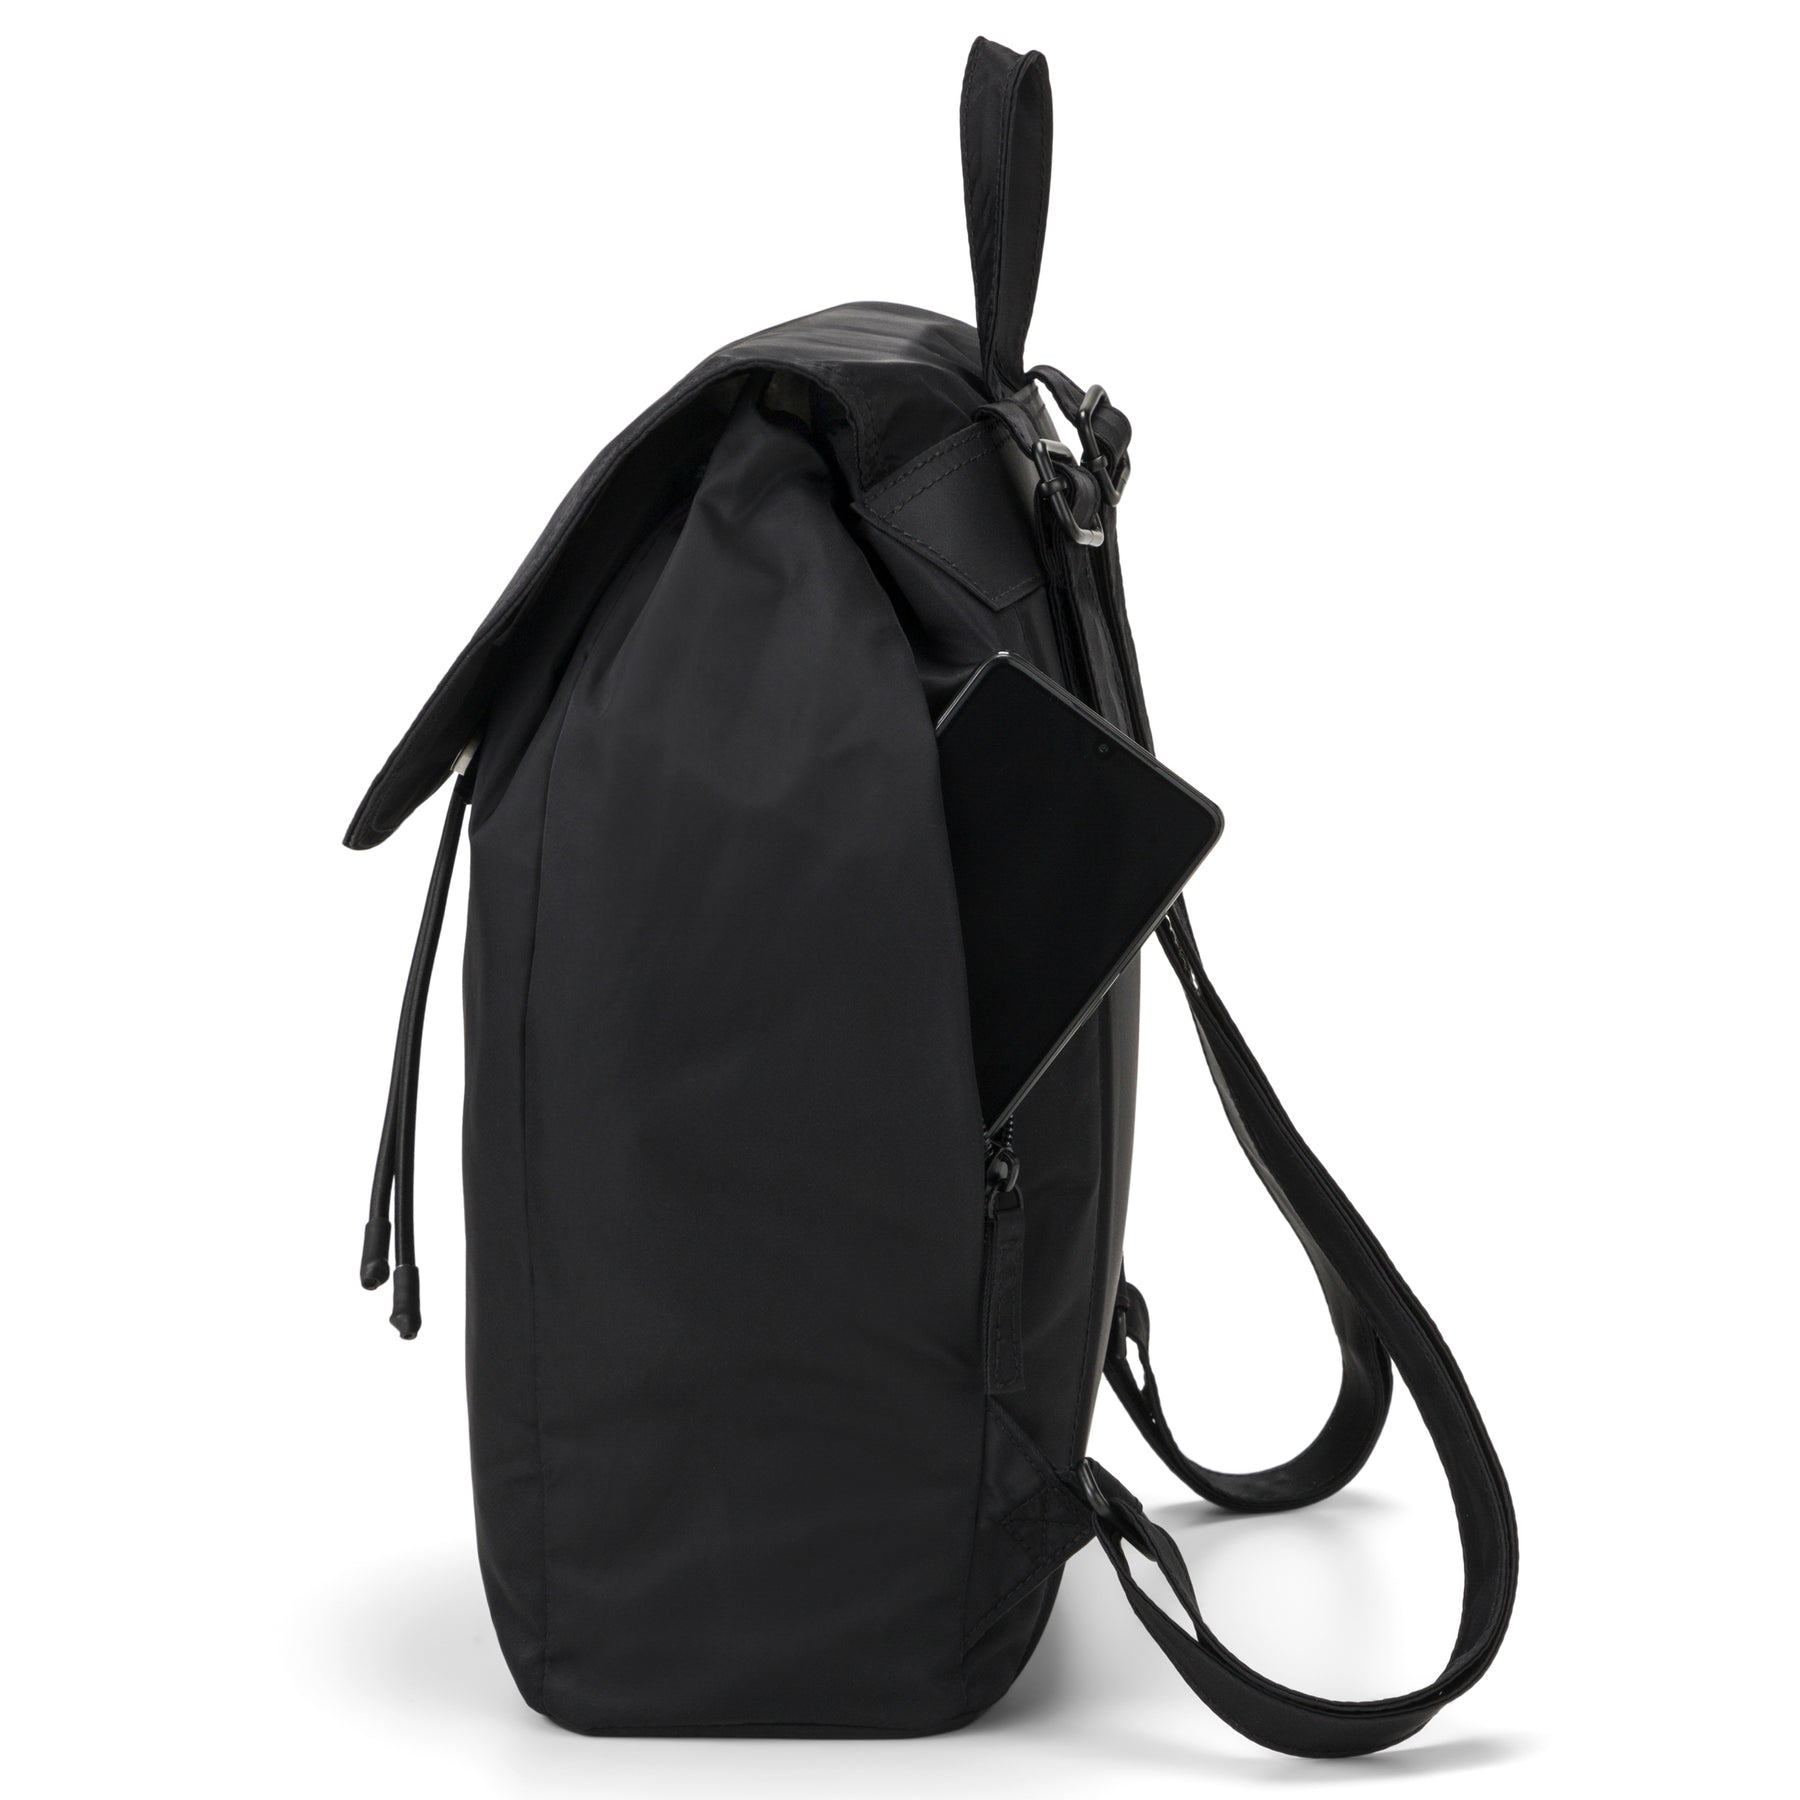 Moderner Rucksack mit versteckter Seitentasche